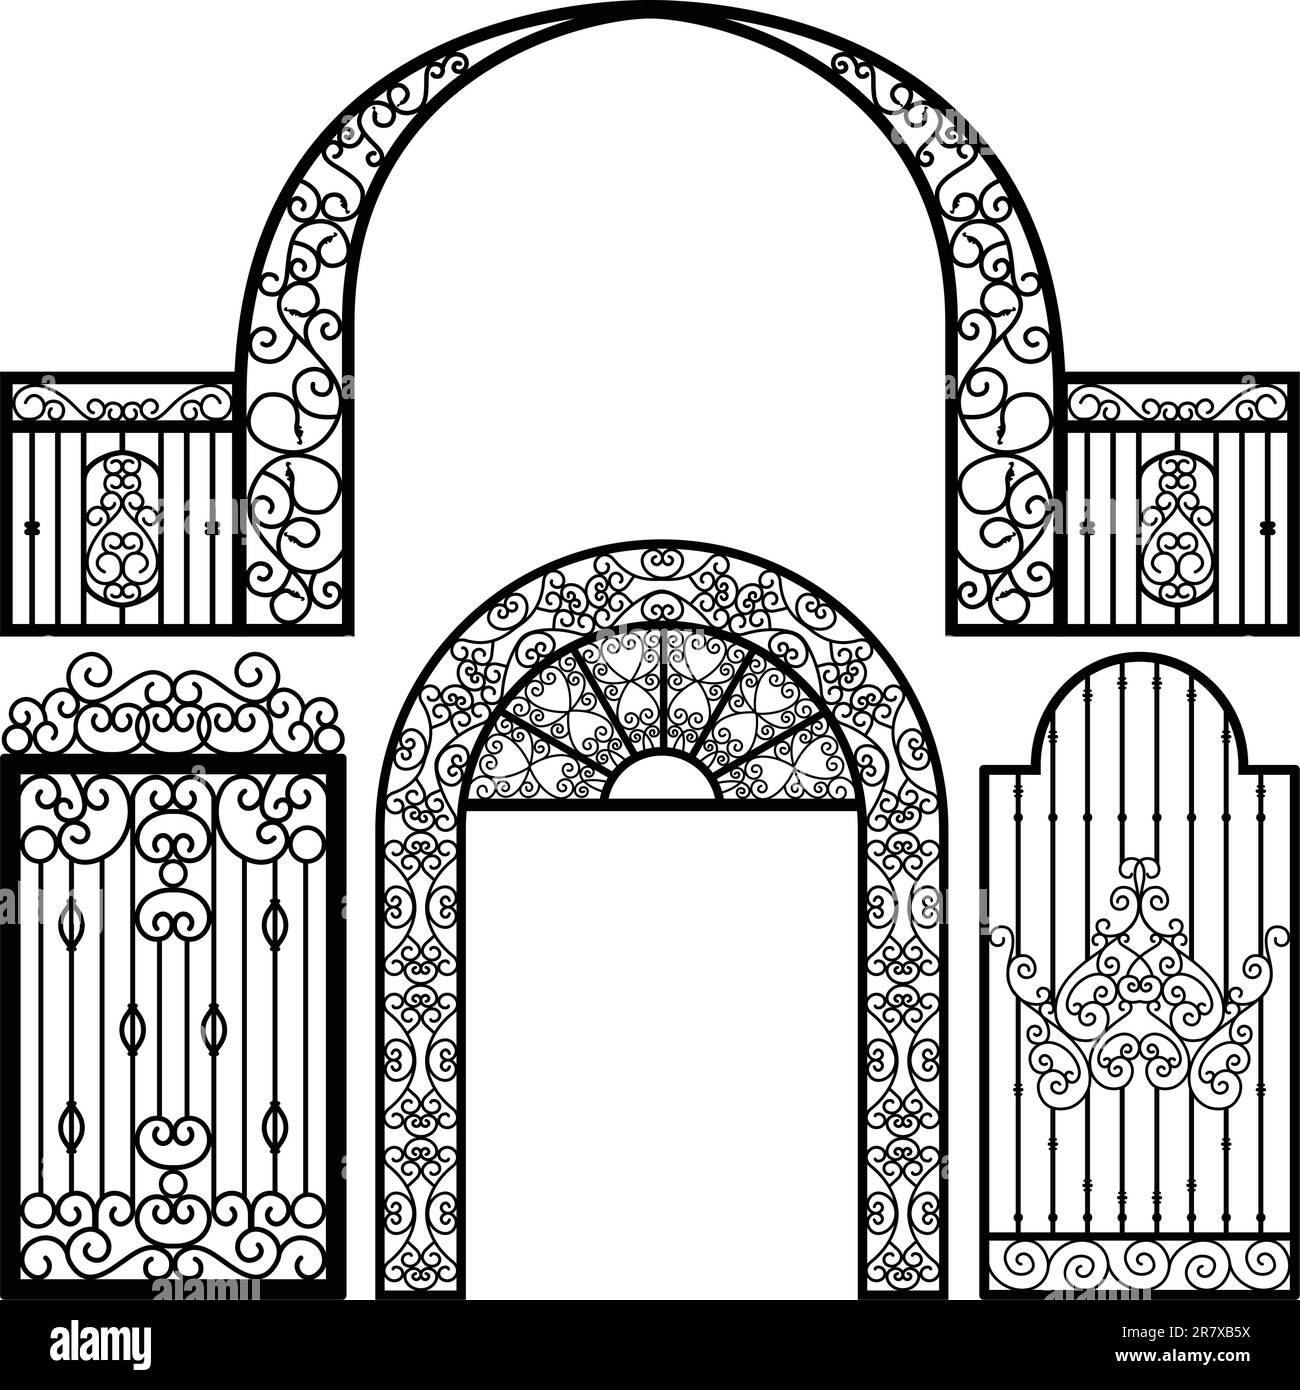 A set of vintage gate design. Stock Vector